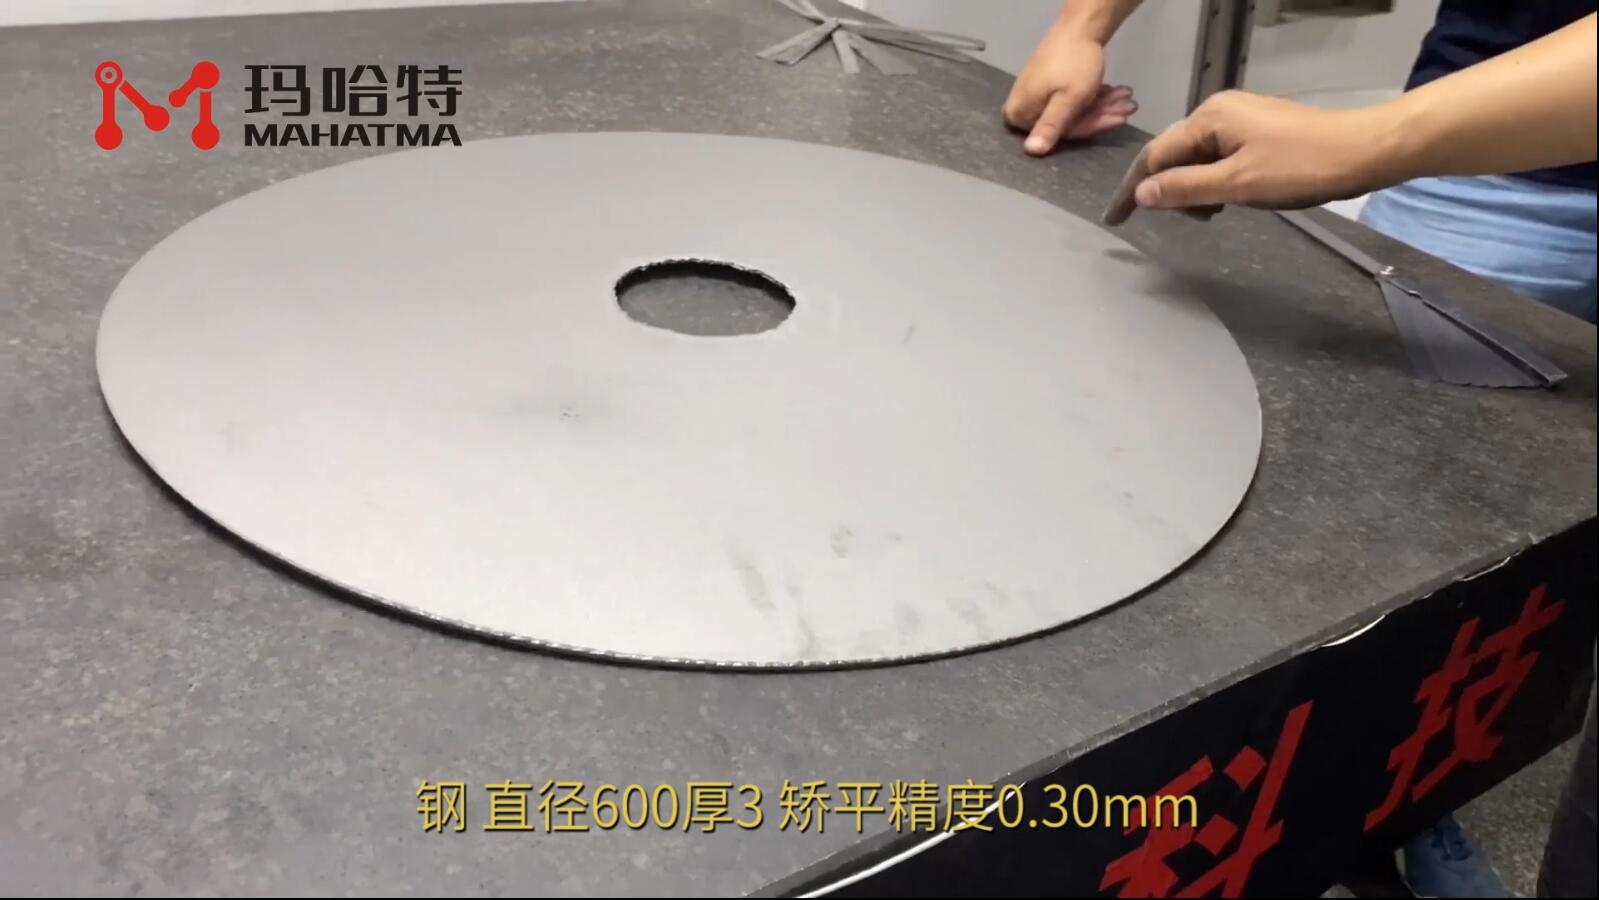 钢 MHT80-800 圆形 直径600厚3mm